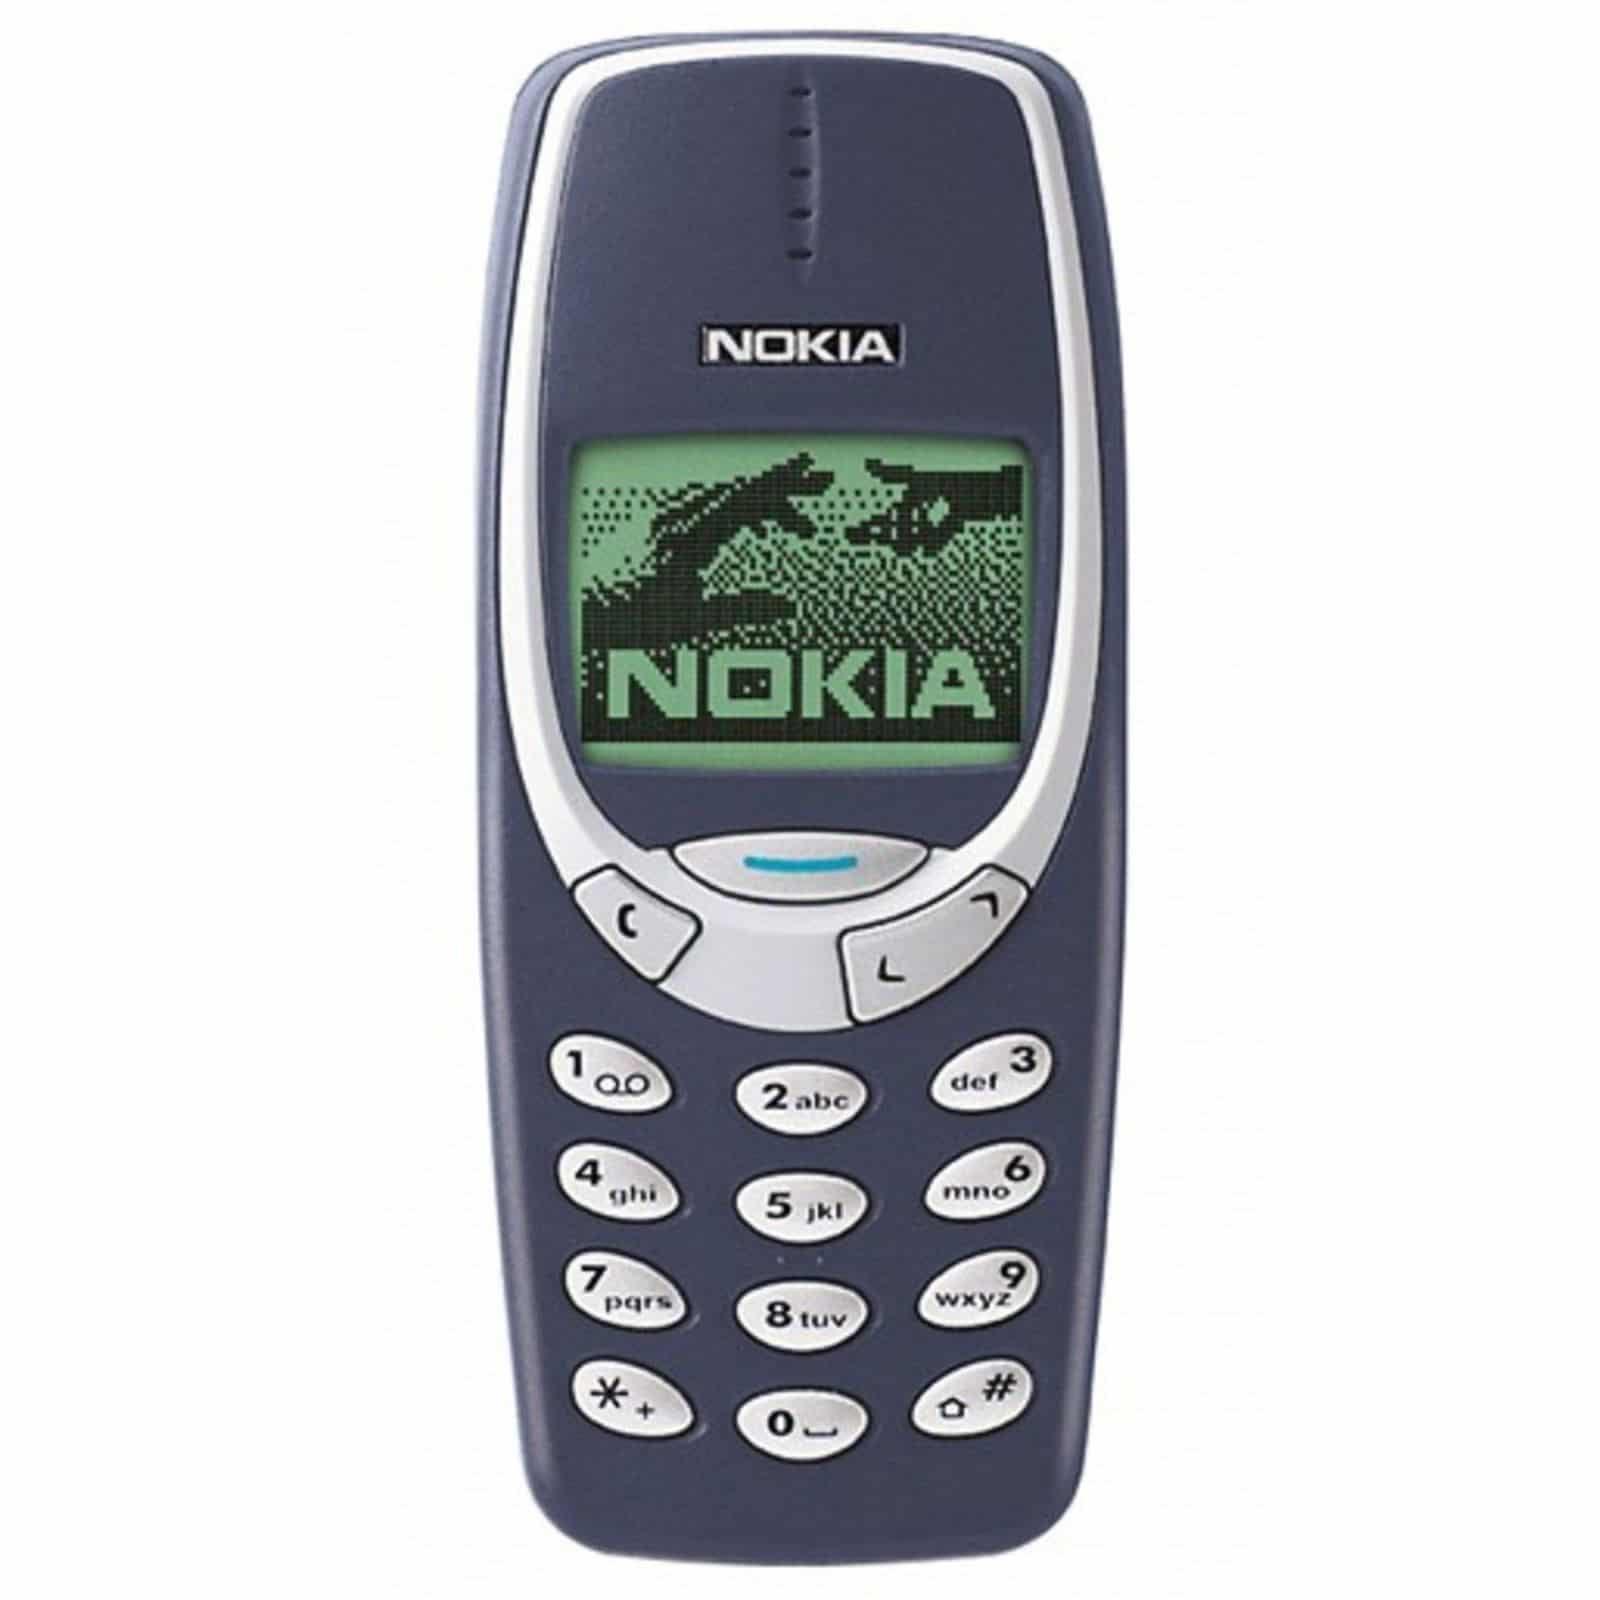 Как купить нерушимый Nokia 3310 ОЧЕНЬ ДЕШЕВО